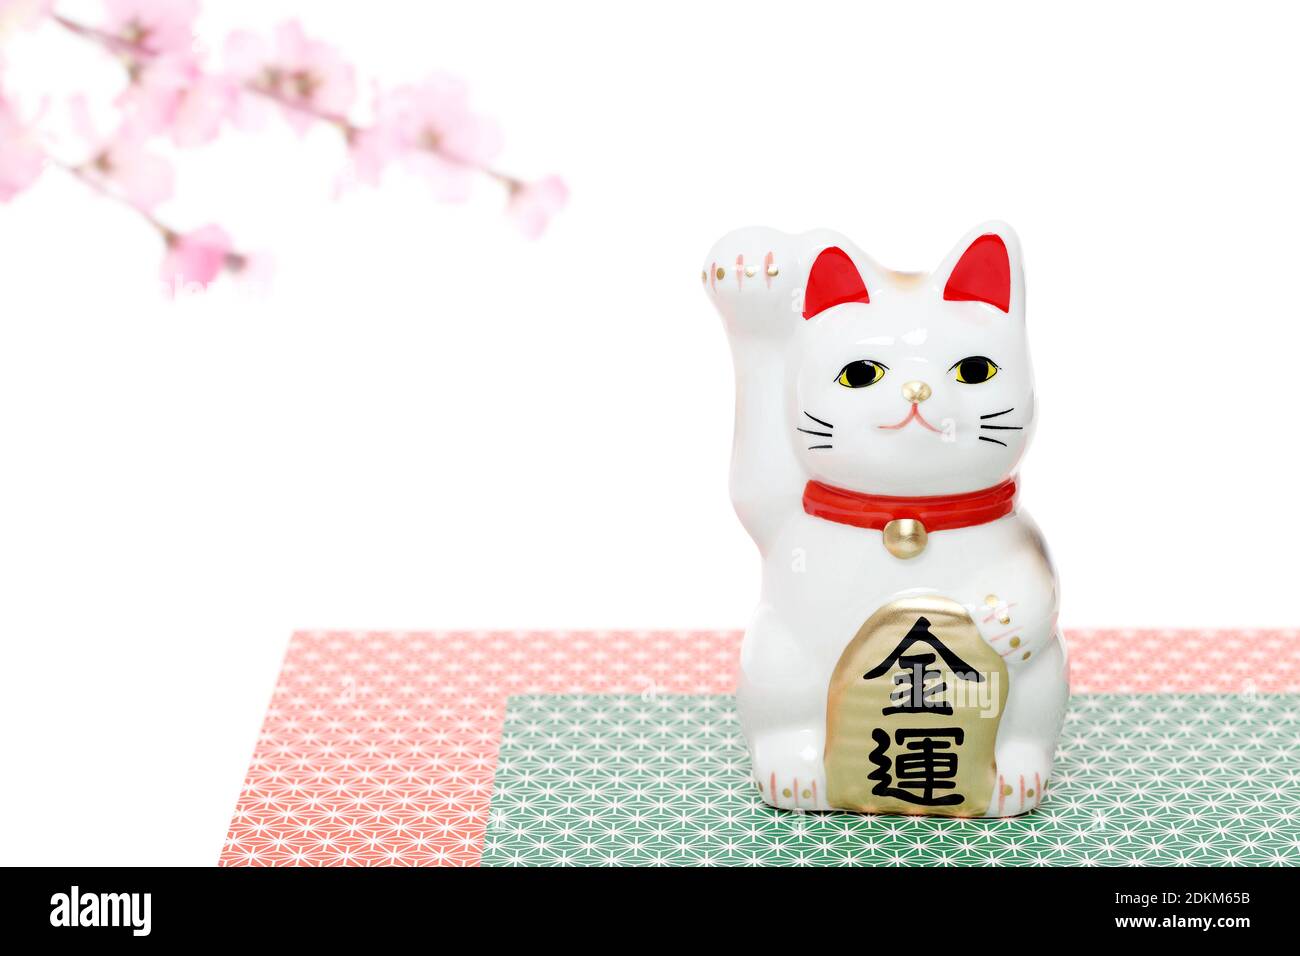 Maneki Neko Lucky Katze Puppe, japanische Wort dieser Fotografie bedeutet "wirtschaftliches Glück" Stockfoto